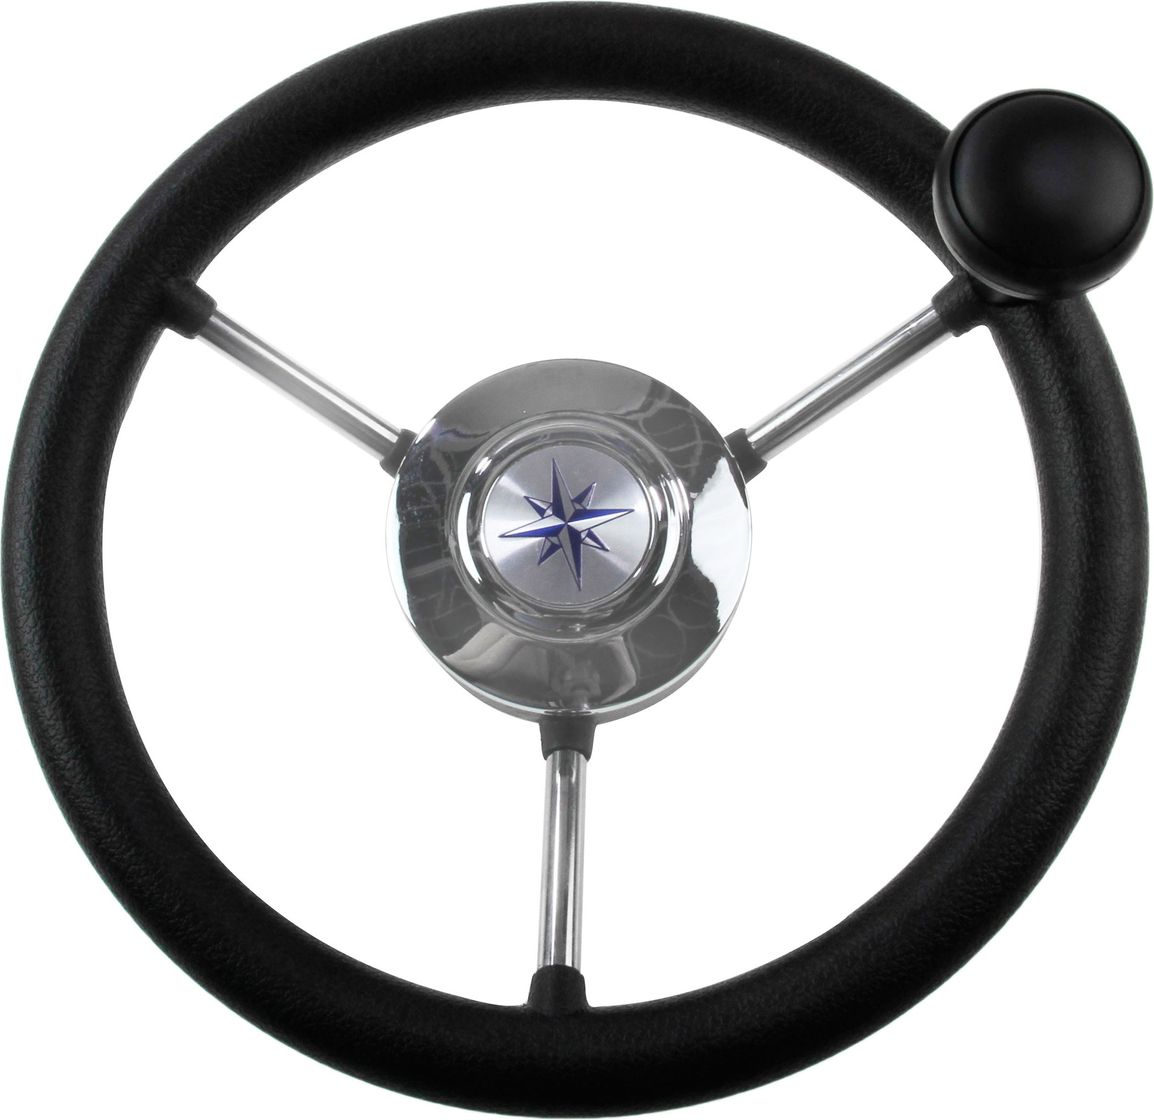 Рулевое колесо LIPARI обод черный, спицы серебряные д. 280 мм со спинером VN828050-01 рулевое колесо leader wood деревянный обод серебряные спицы д 360 мм vn7360 33